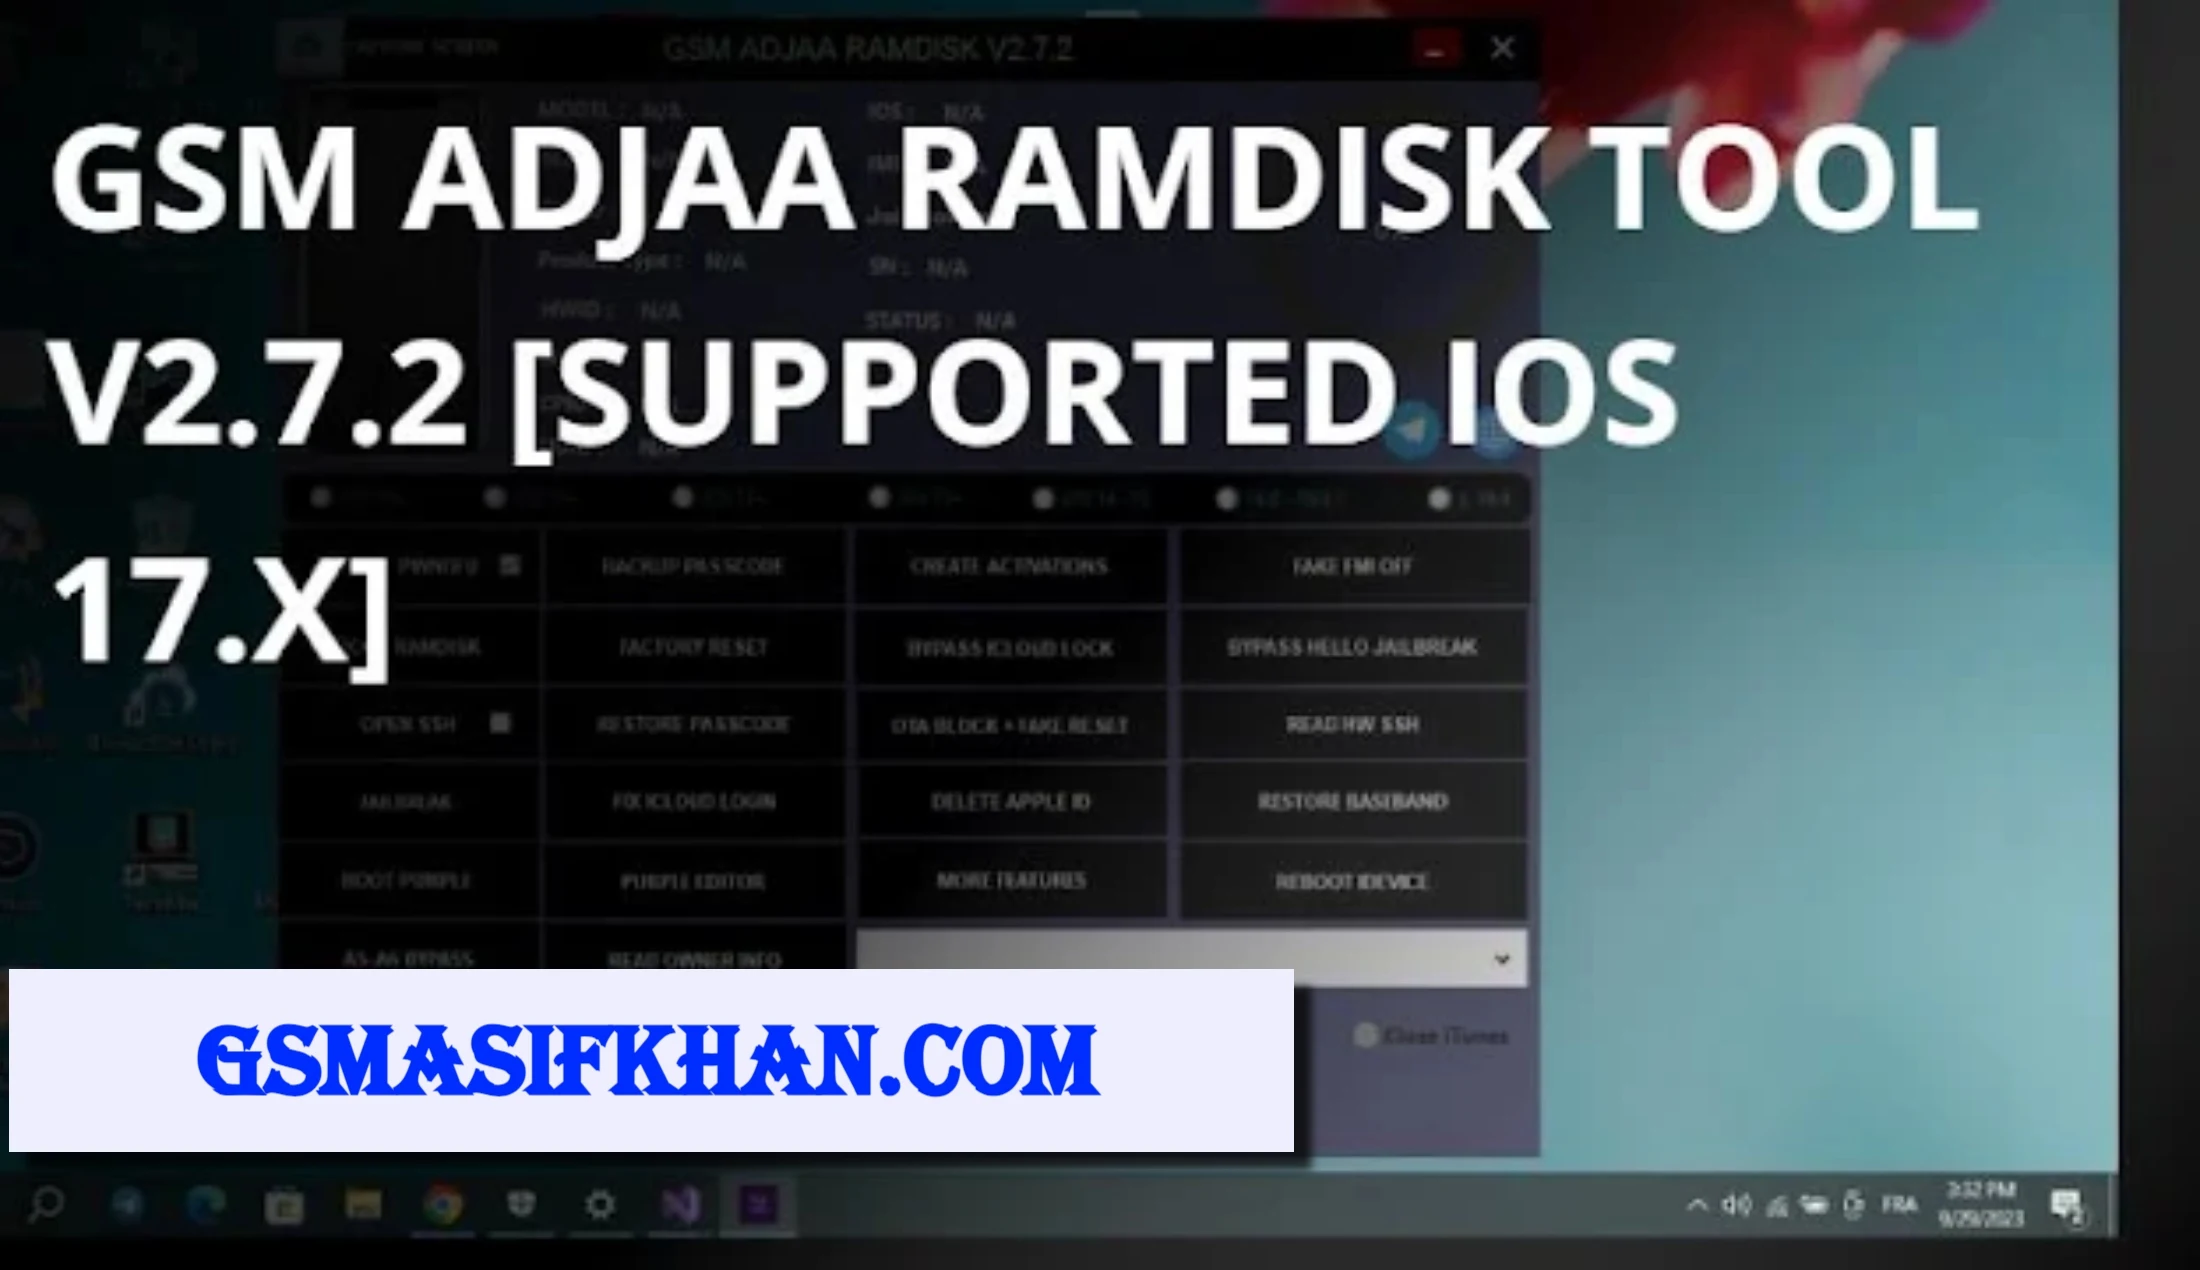 GSM Adjaa Ramdisk Tool V2.7.2: iOS 17.x